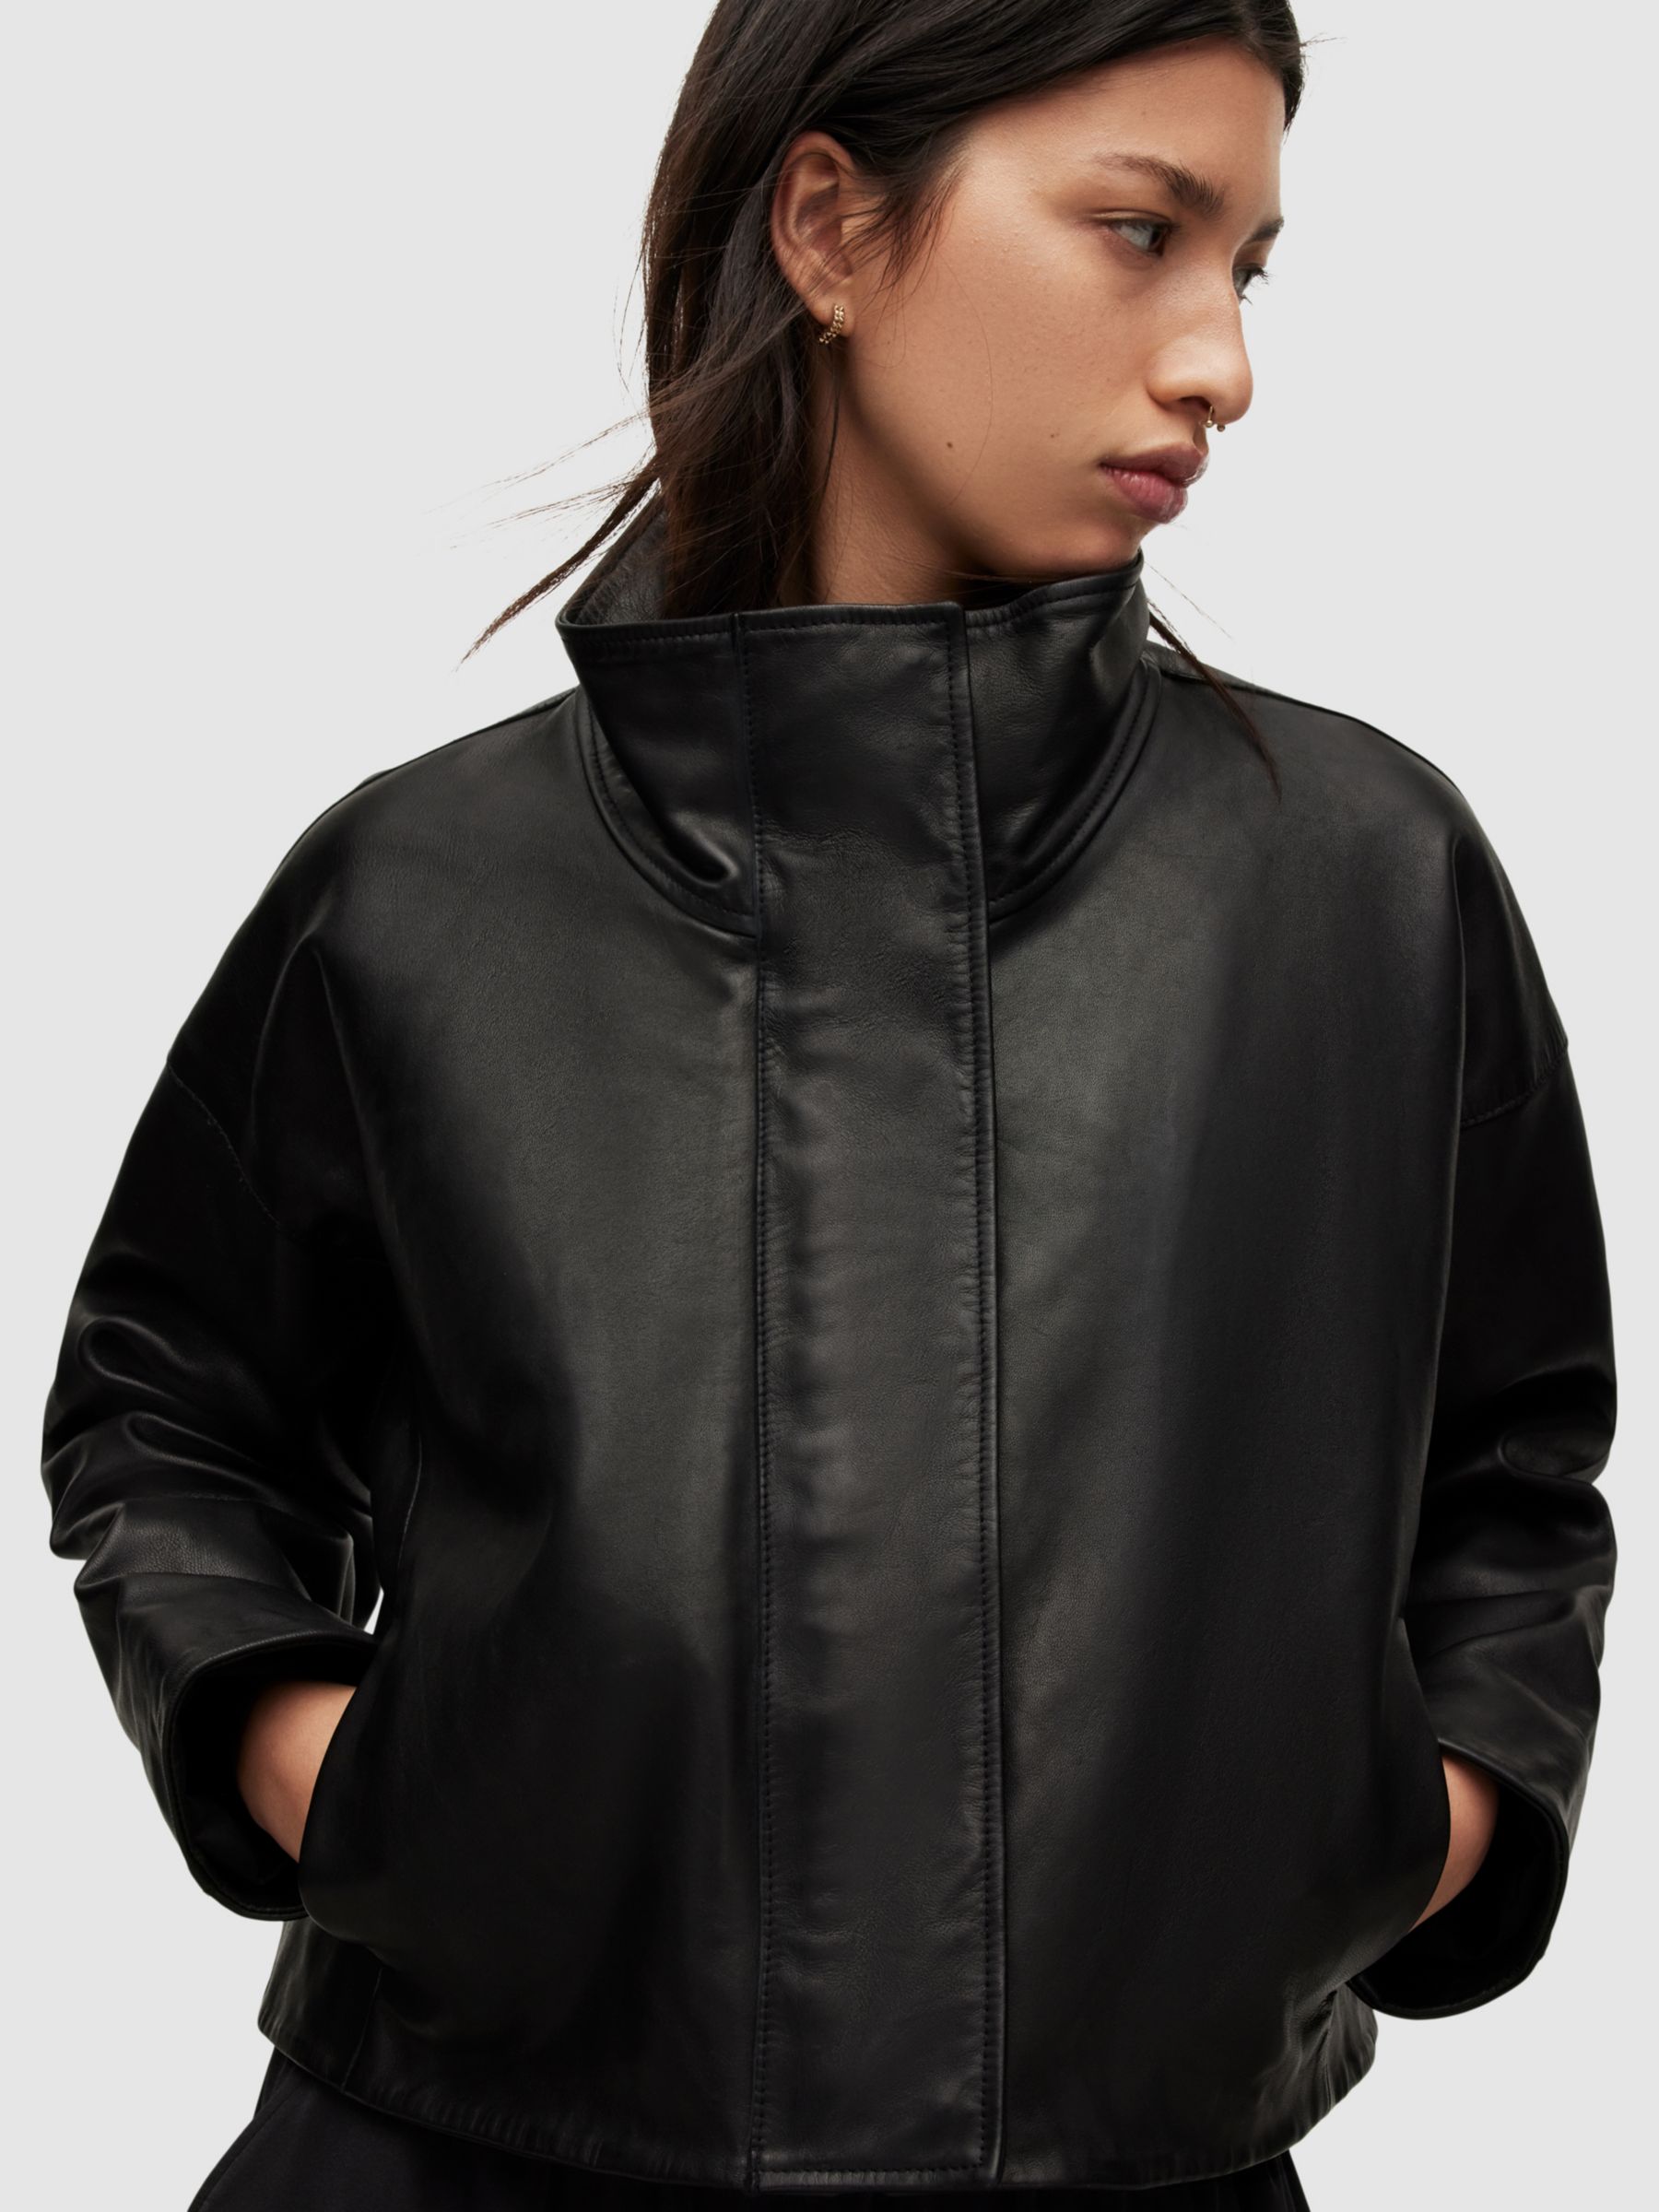 Buy AllSaints Ryder Leather Jacket, Black Online at johnlewis.com